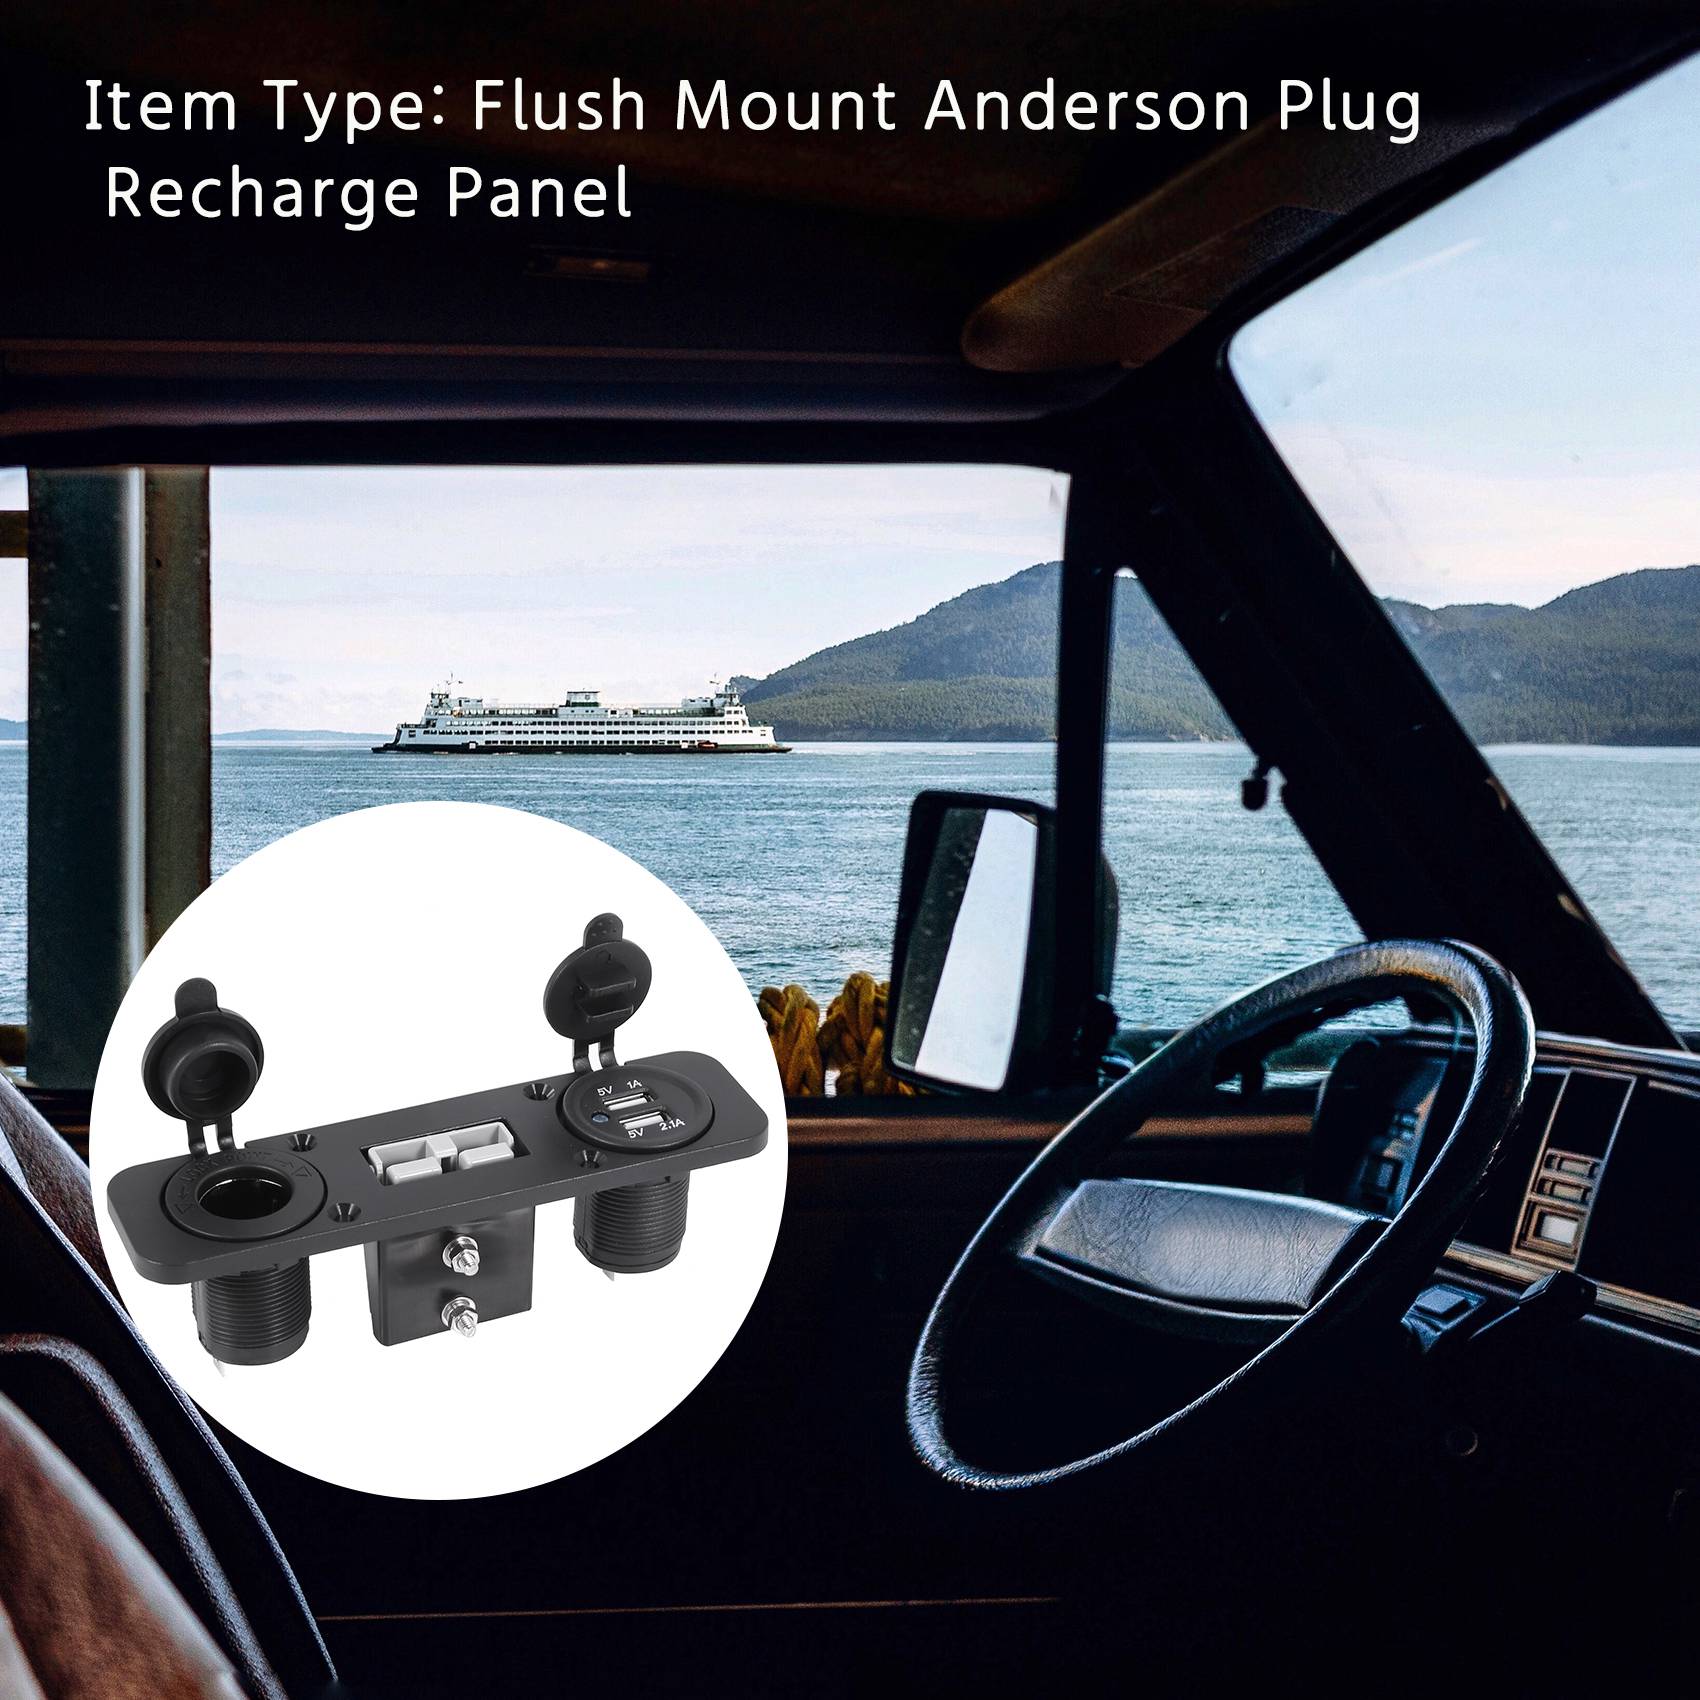 Flush mount anderson plug socket double usb charger socket panel for caravan camper boat truck